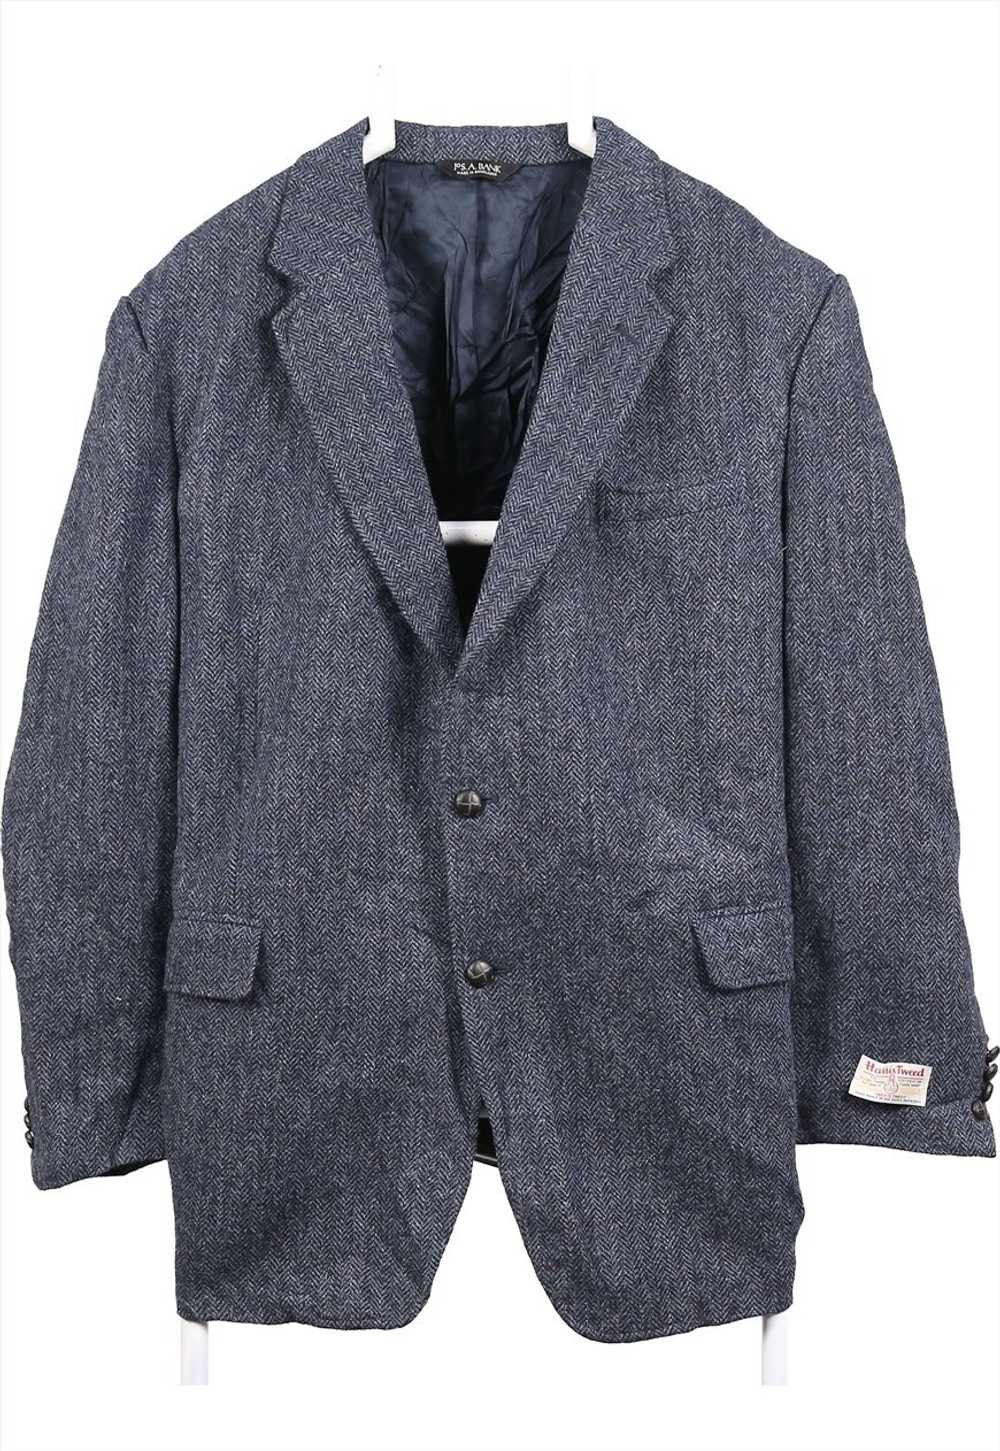 Vintage 90's Harris Tweed Blazer Tweed Wool Jacke… - image 1